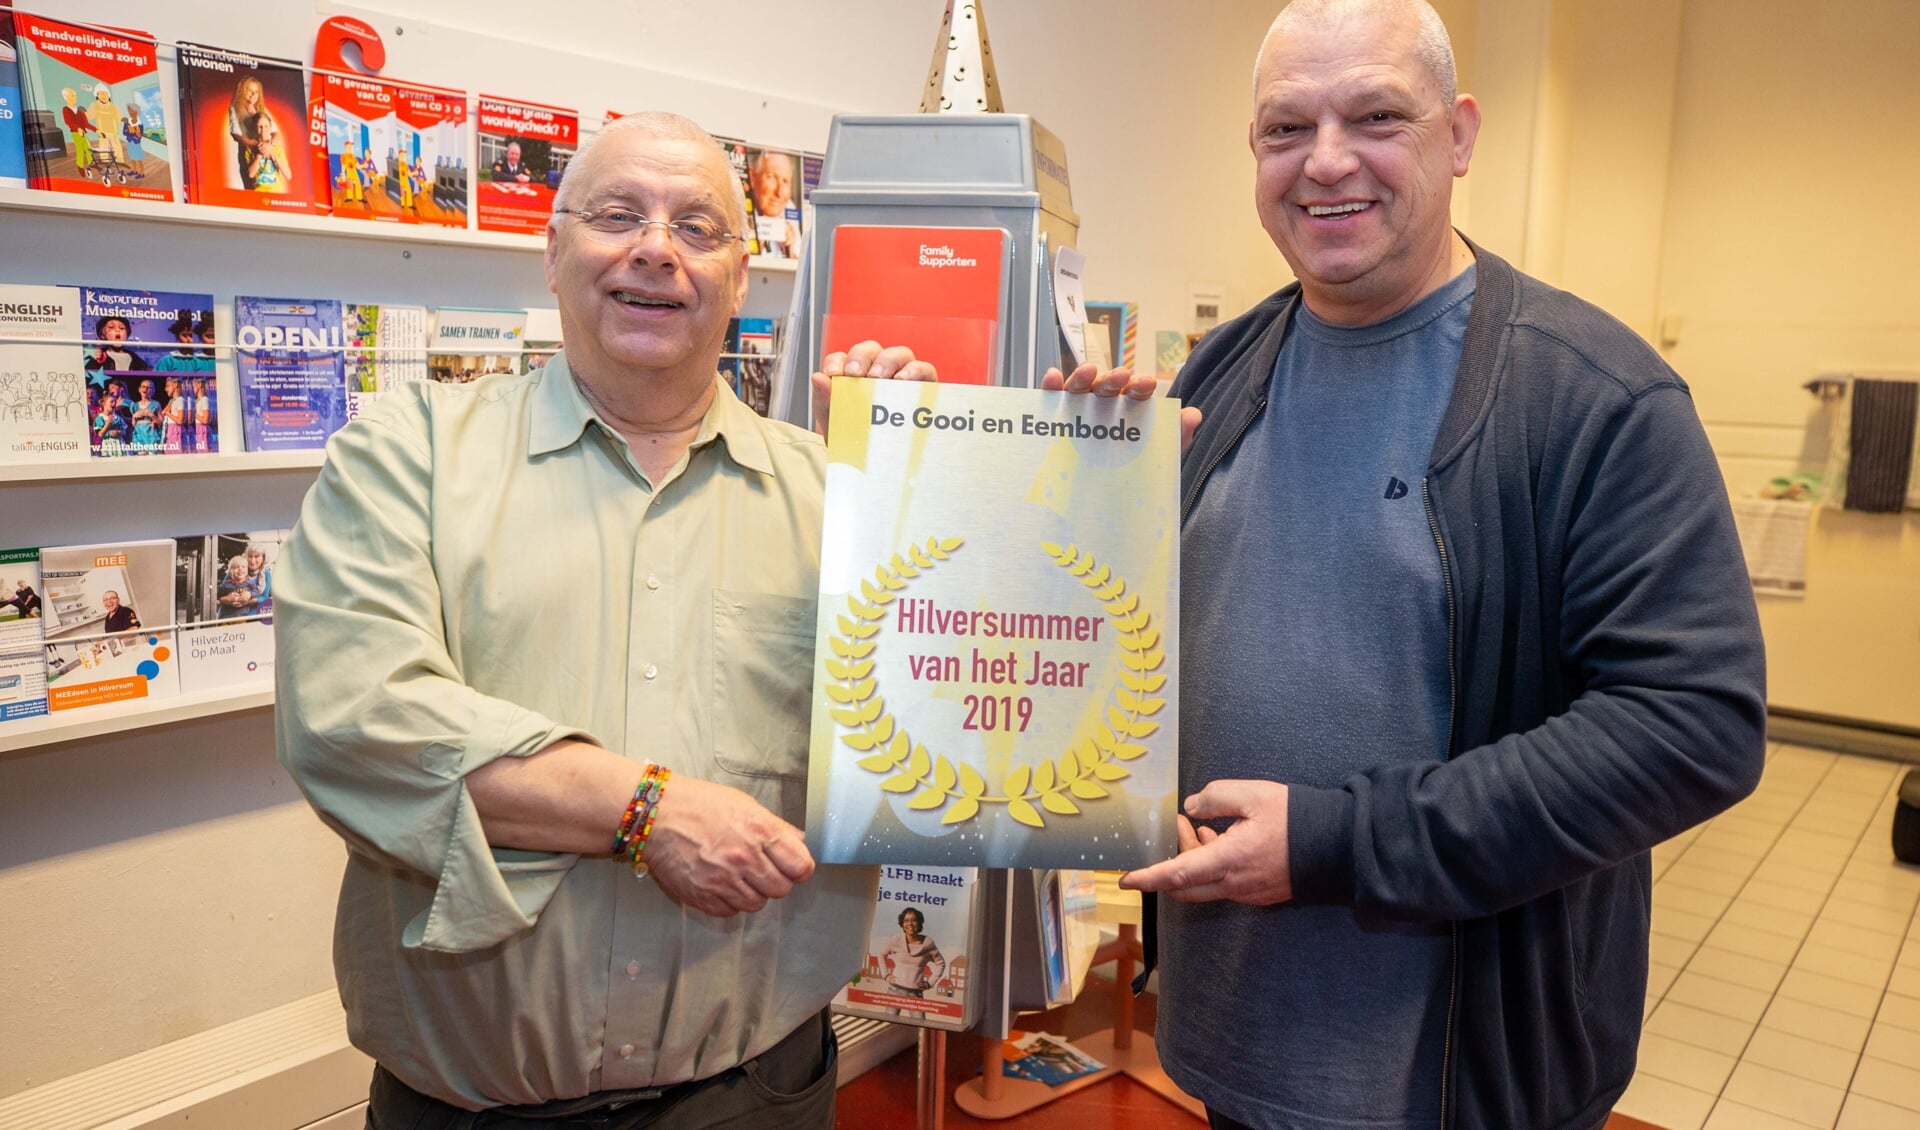 Meijndert Ruitenberg en Ed Bakker, de gezichten van wijkcentrum De Geus, namen de plaquette vereerd in ontvangst. 